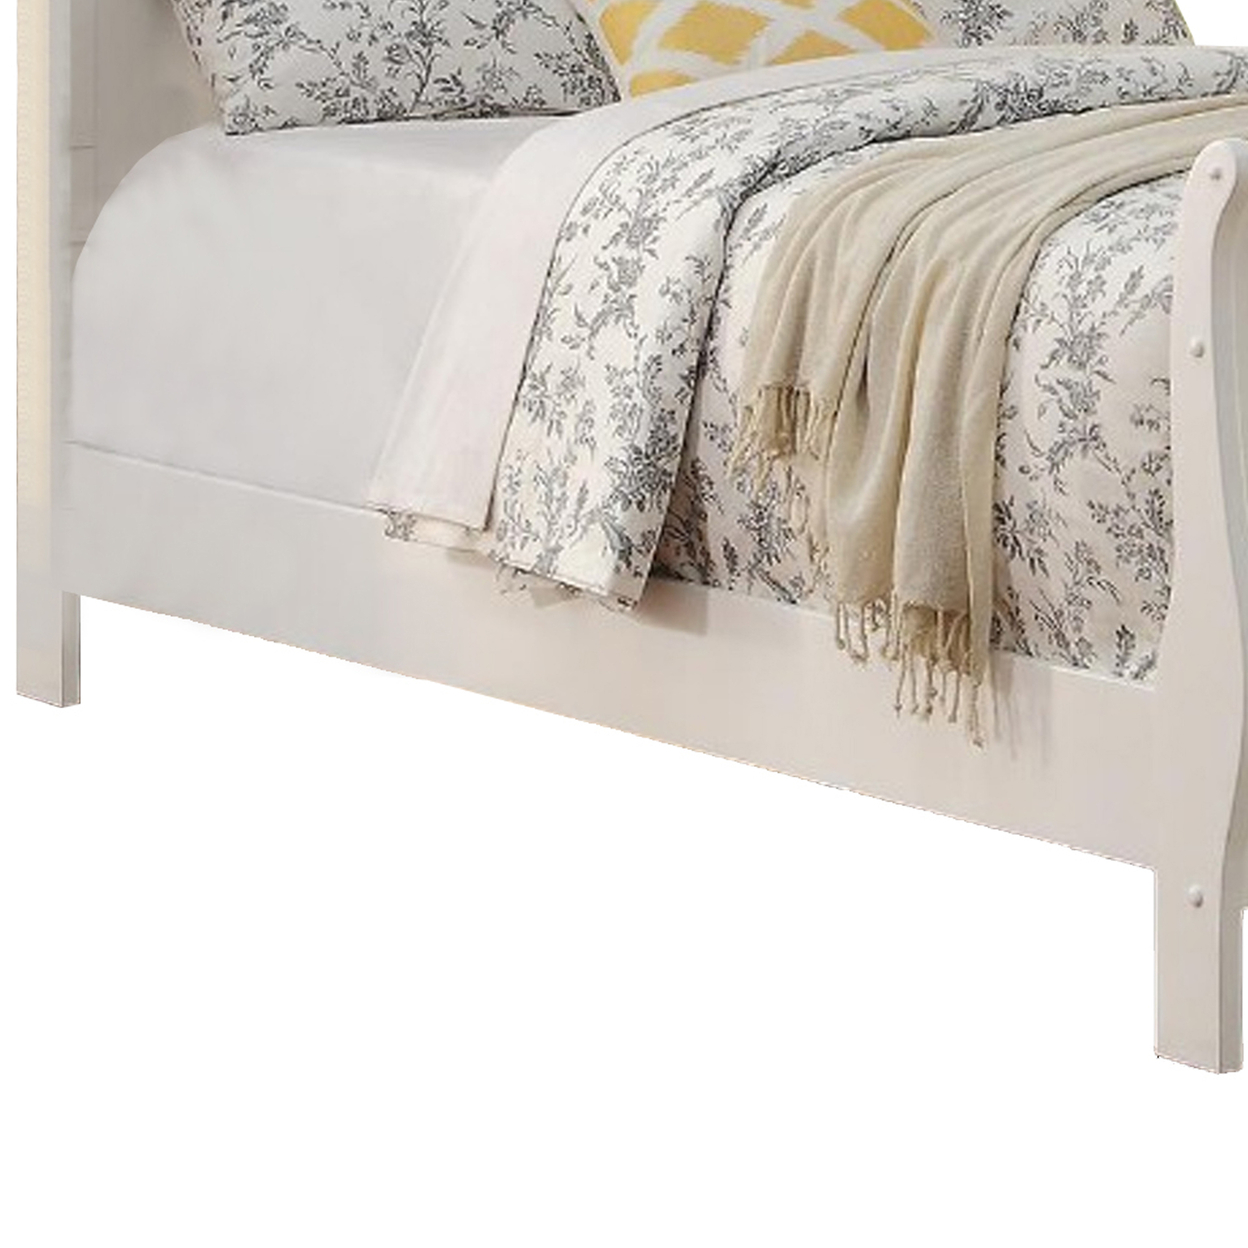 Spellbinding Clean Wooden Full Bed, White- Saltoro Sherpi